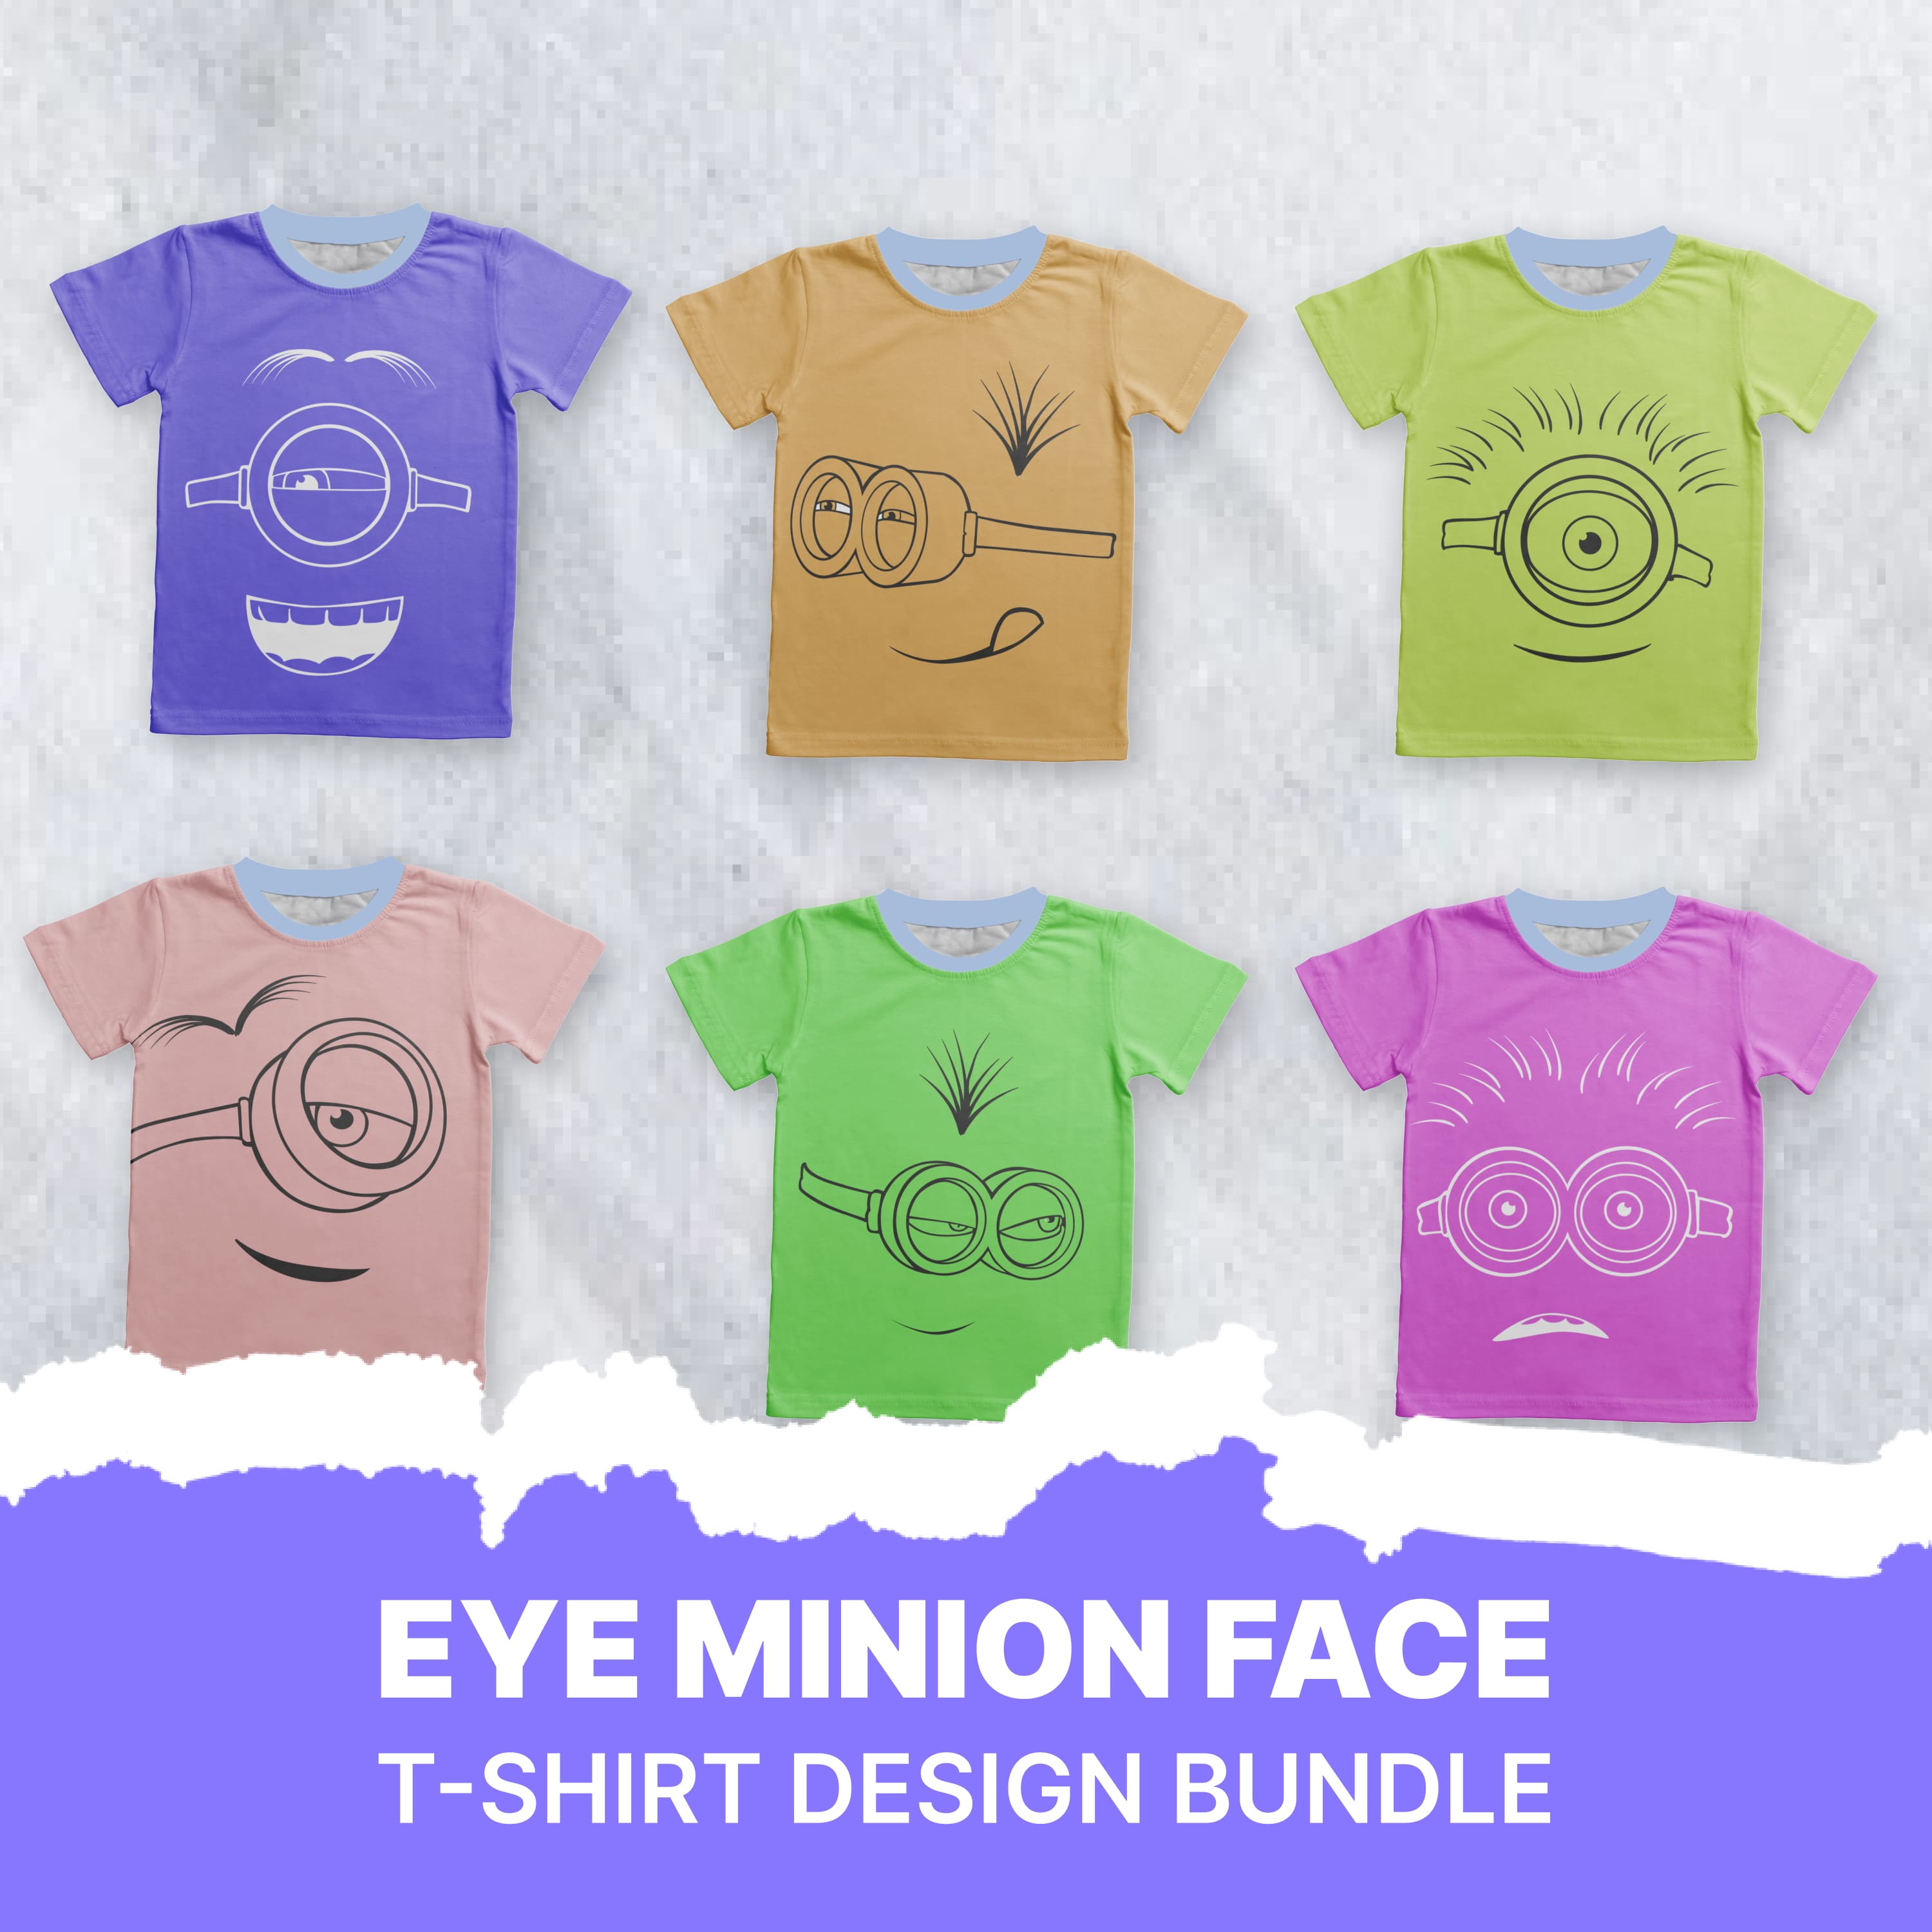 Eye Minion Face T-shirt Designs.